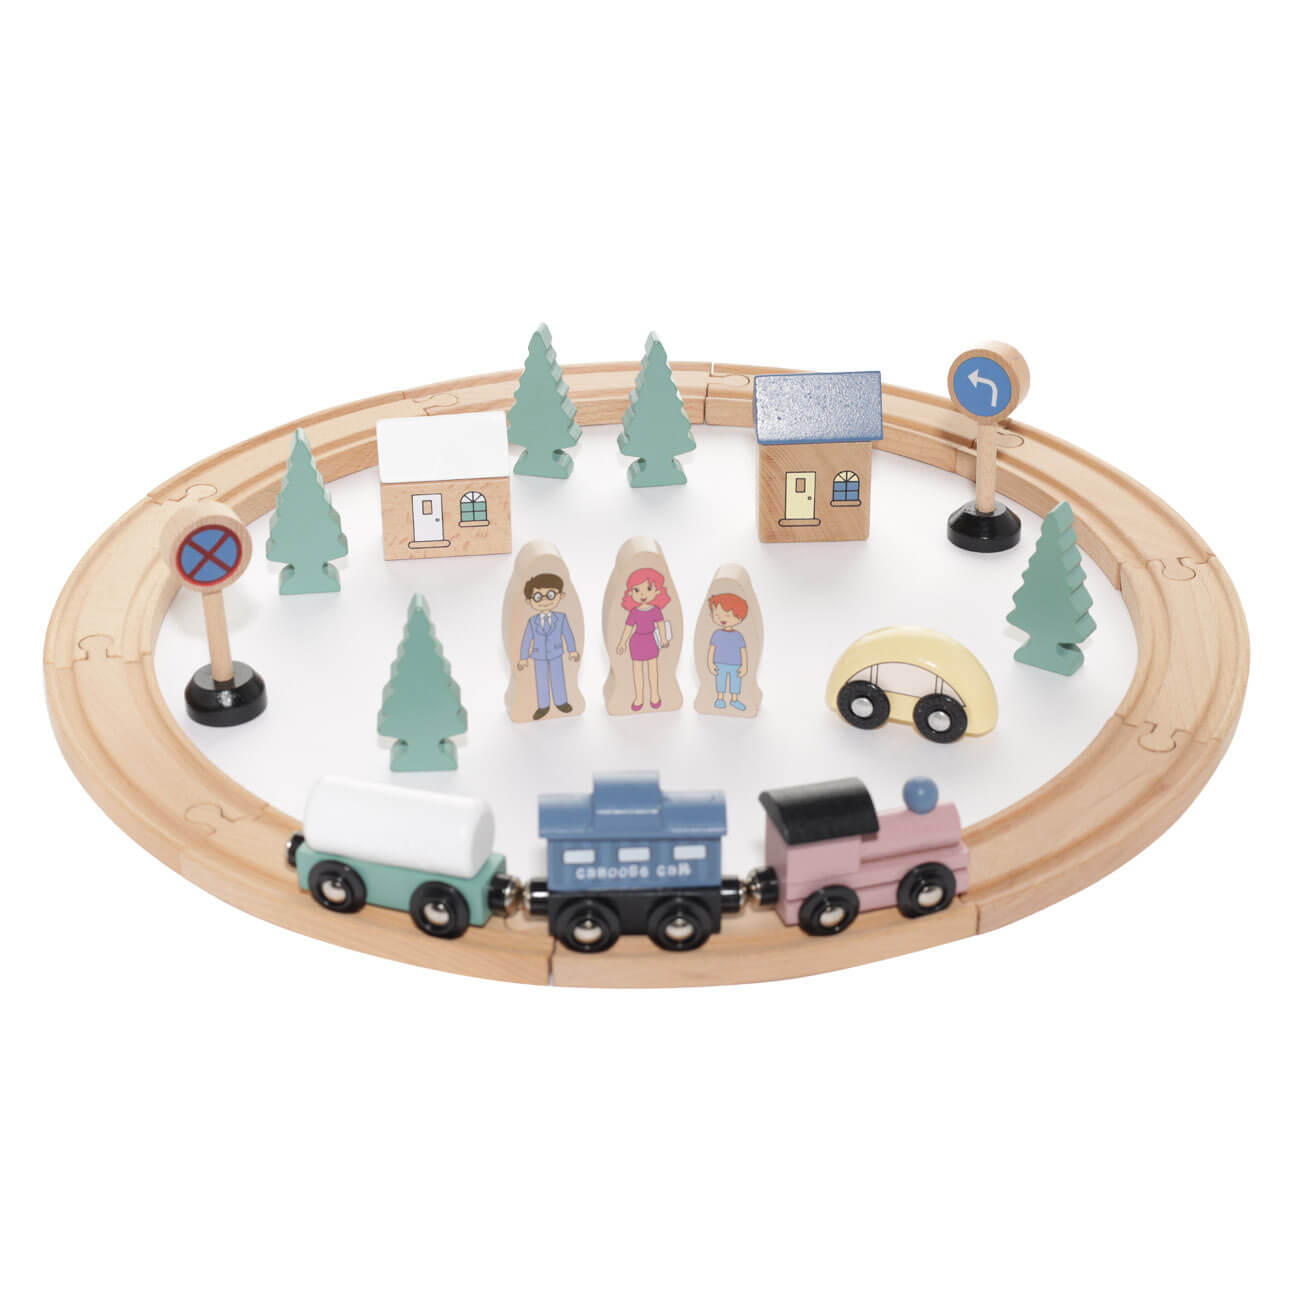 Железная дорога игрушечная, 28 см, дерево, Город, Game железная дорога новогоднее путешествие свет на батарейках